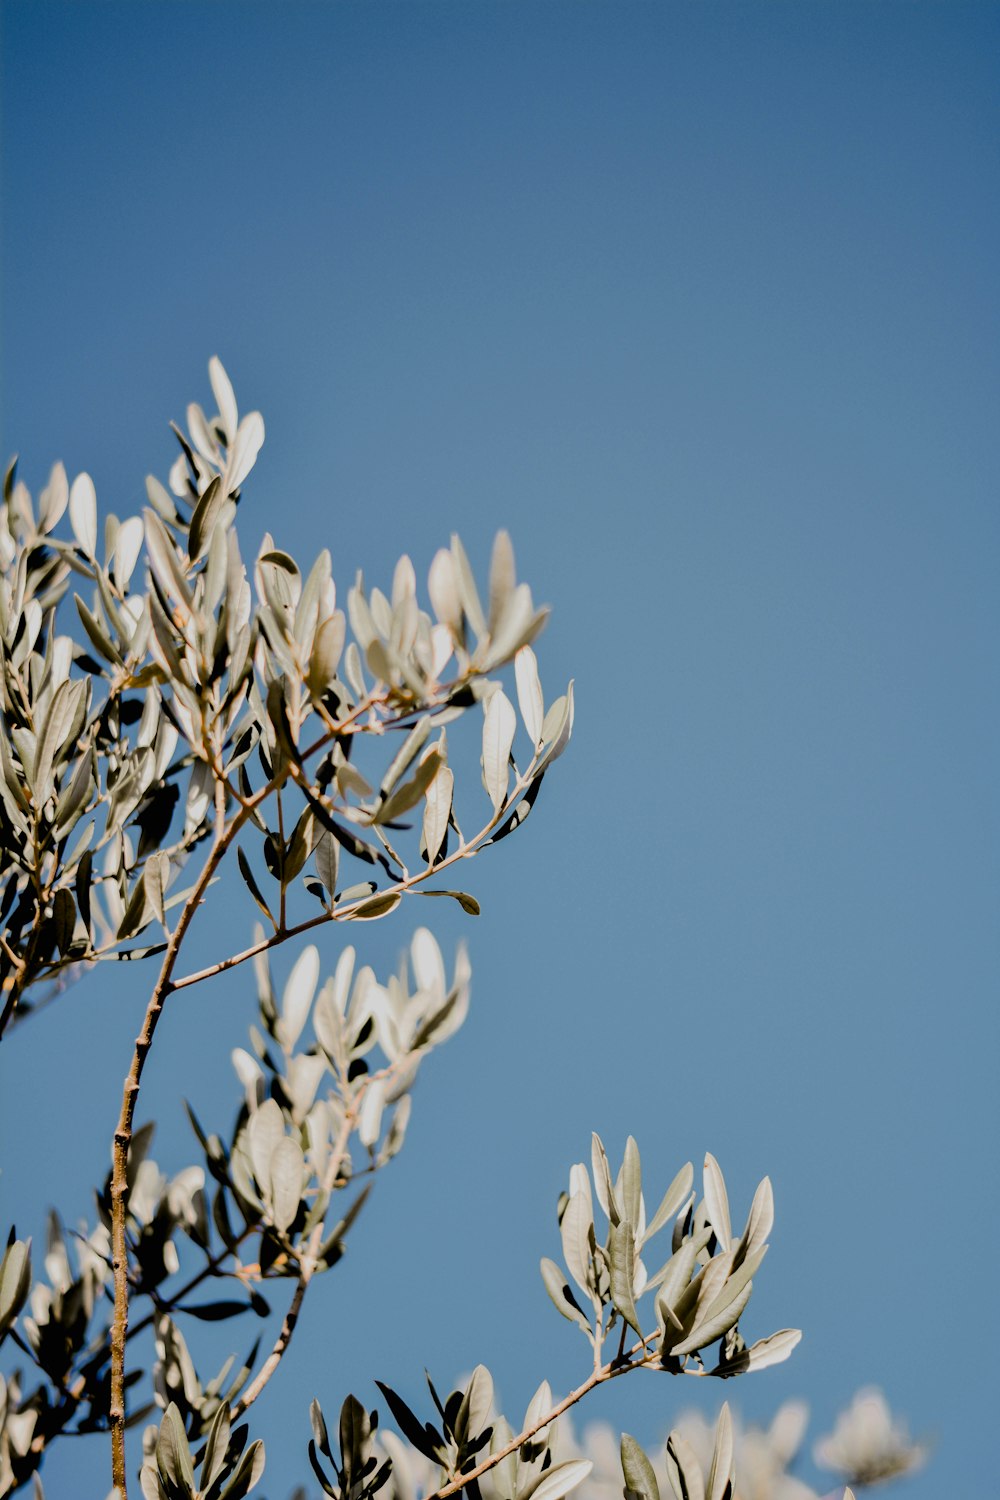 갈색 나뭇가지에 흰 꽃